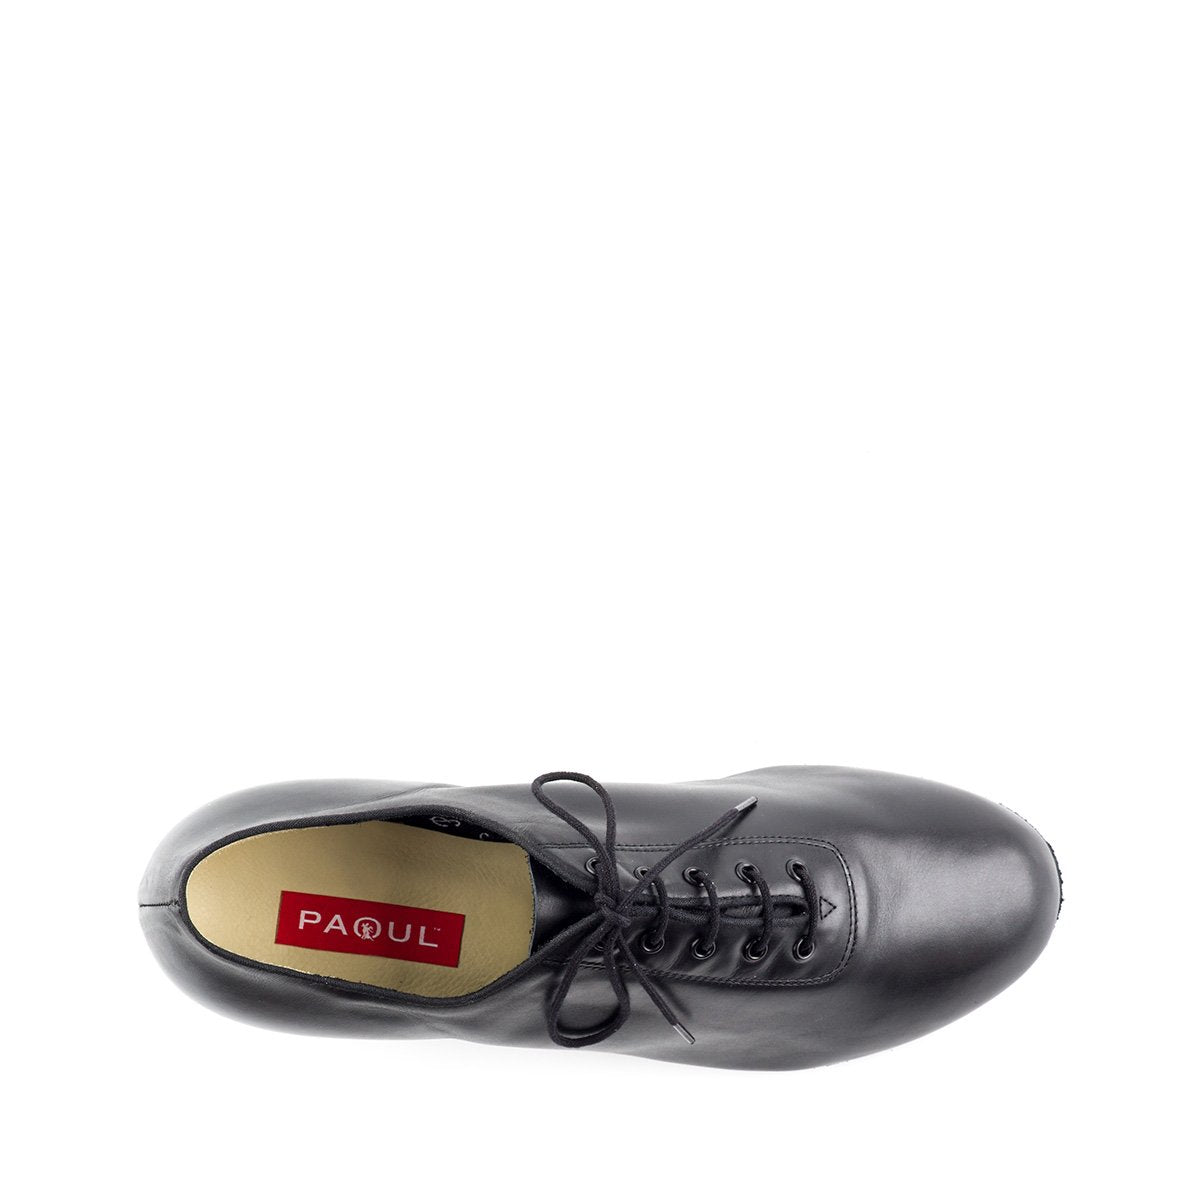 Paoul men's black leather dance shoe